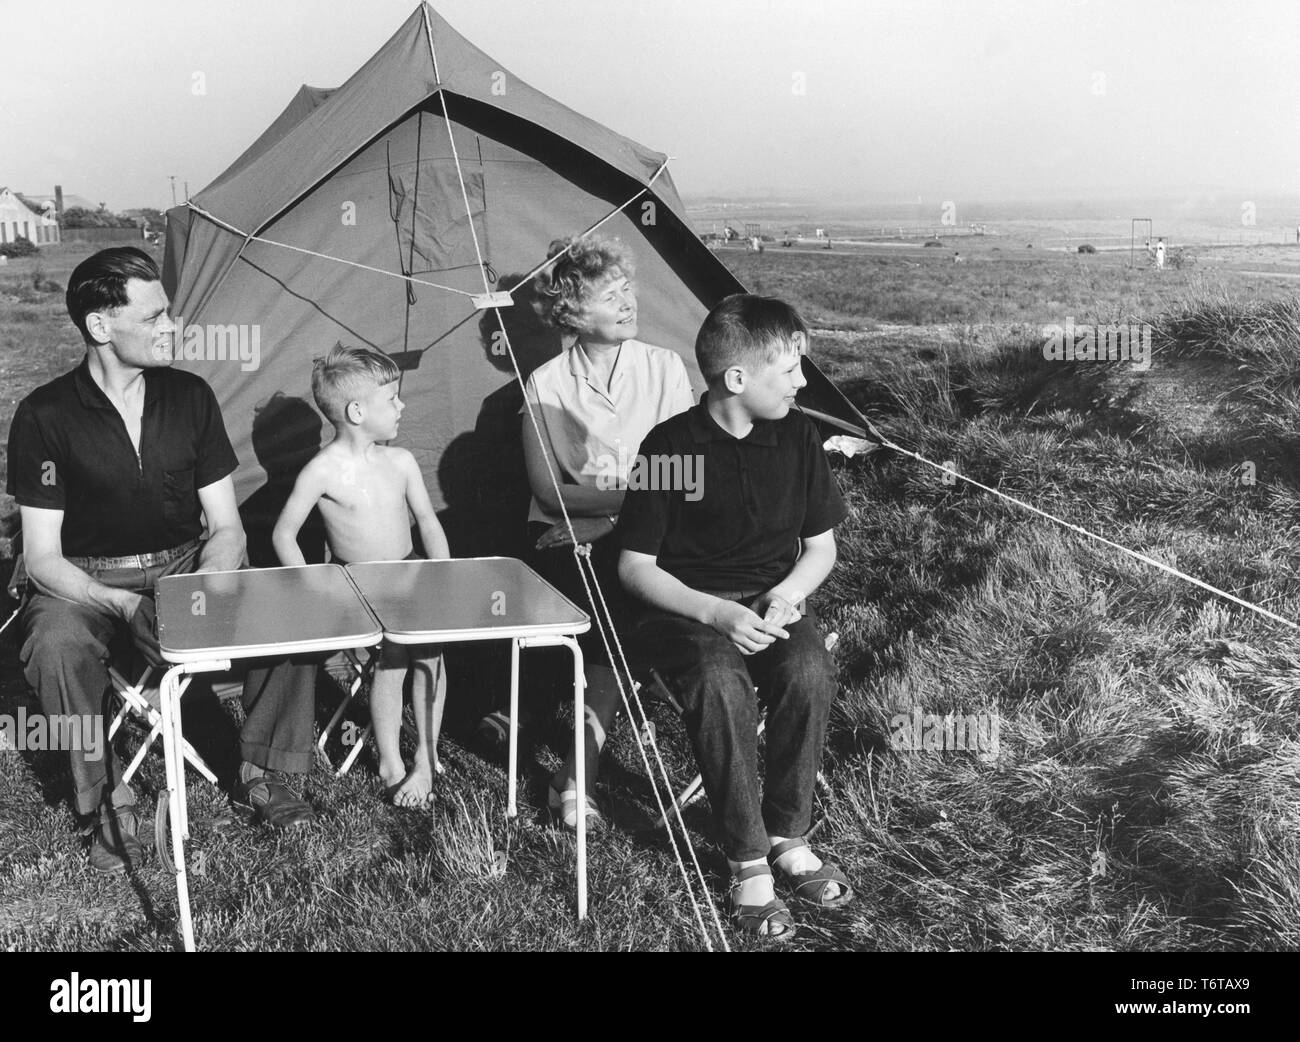 Camping in den 1960er Jahren. Eine Familie außerhalb Ihres Zeltes. Eine einfache und billige Art und Weise Ihren Urlaub zu verbringen. Die wichtigen Klapptisch ist sichtbar, und sie nahm es mit leichter, dass sie weise und nimmt wenig Platz im Kofferraum des Autos. Schweden 1962 Stockfoto